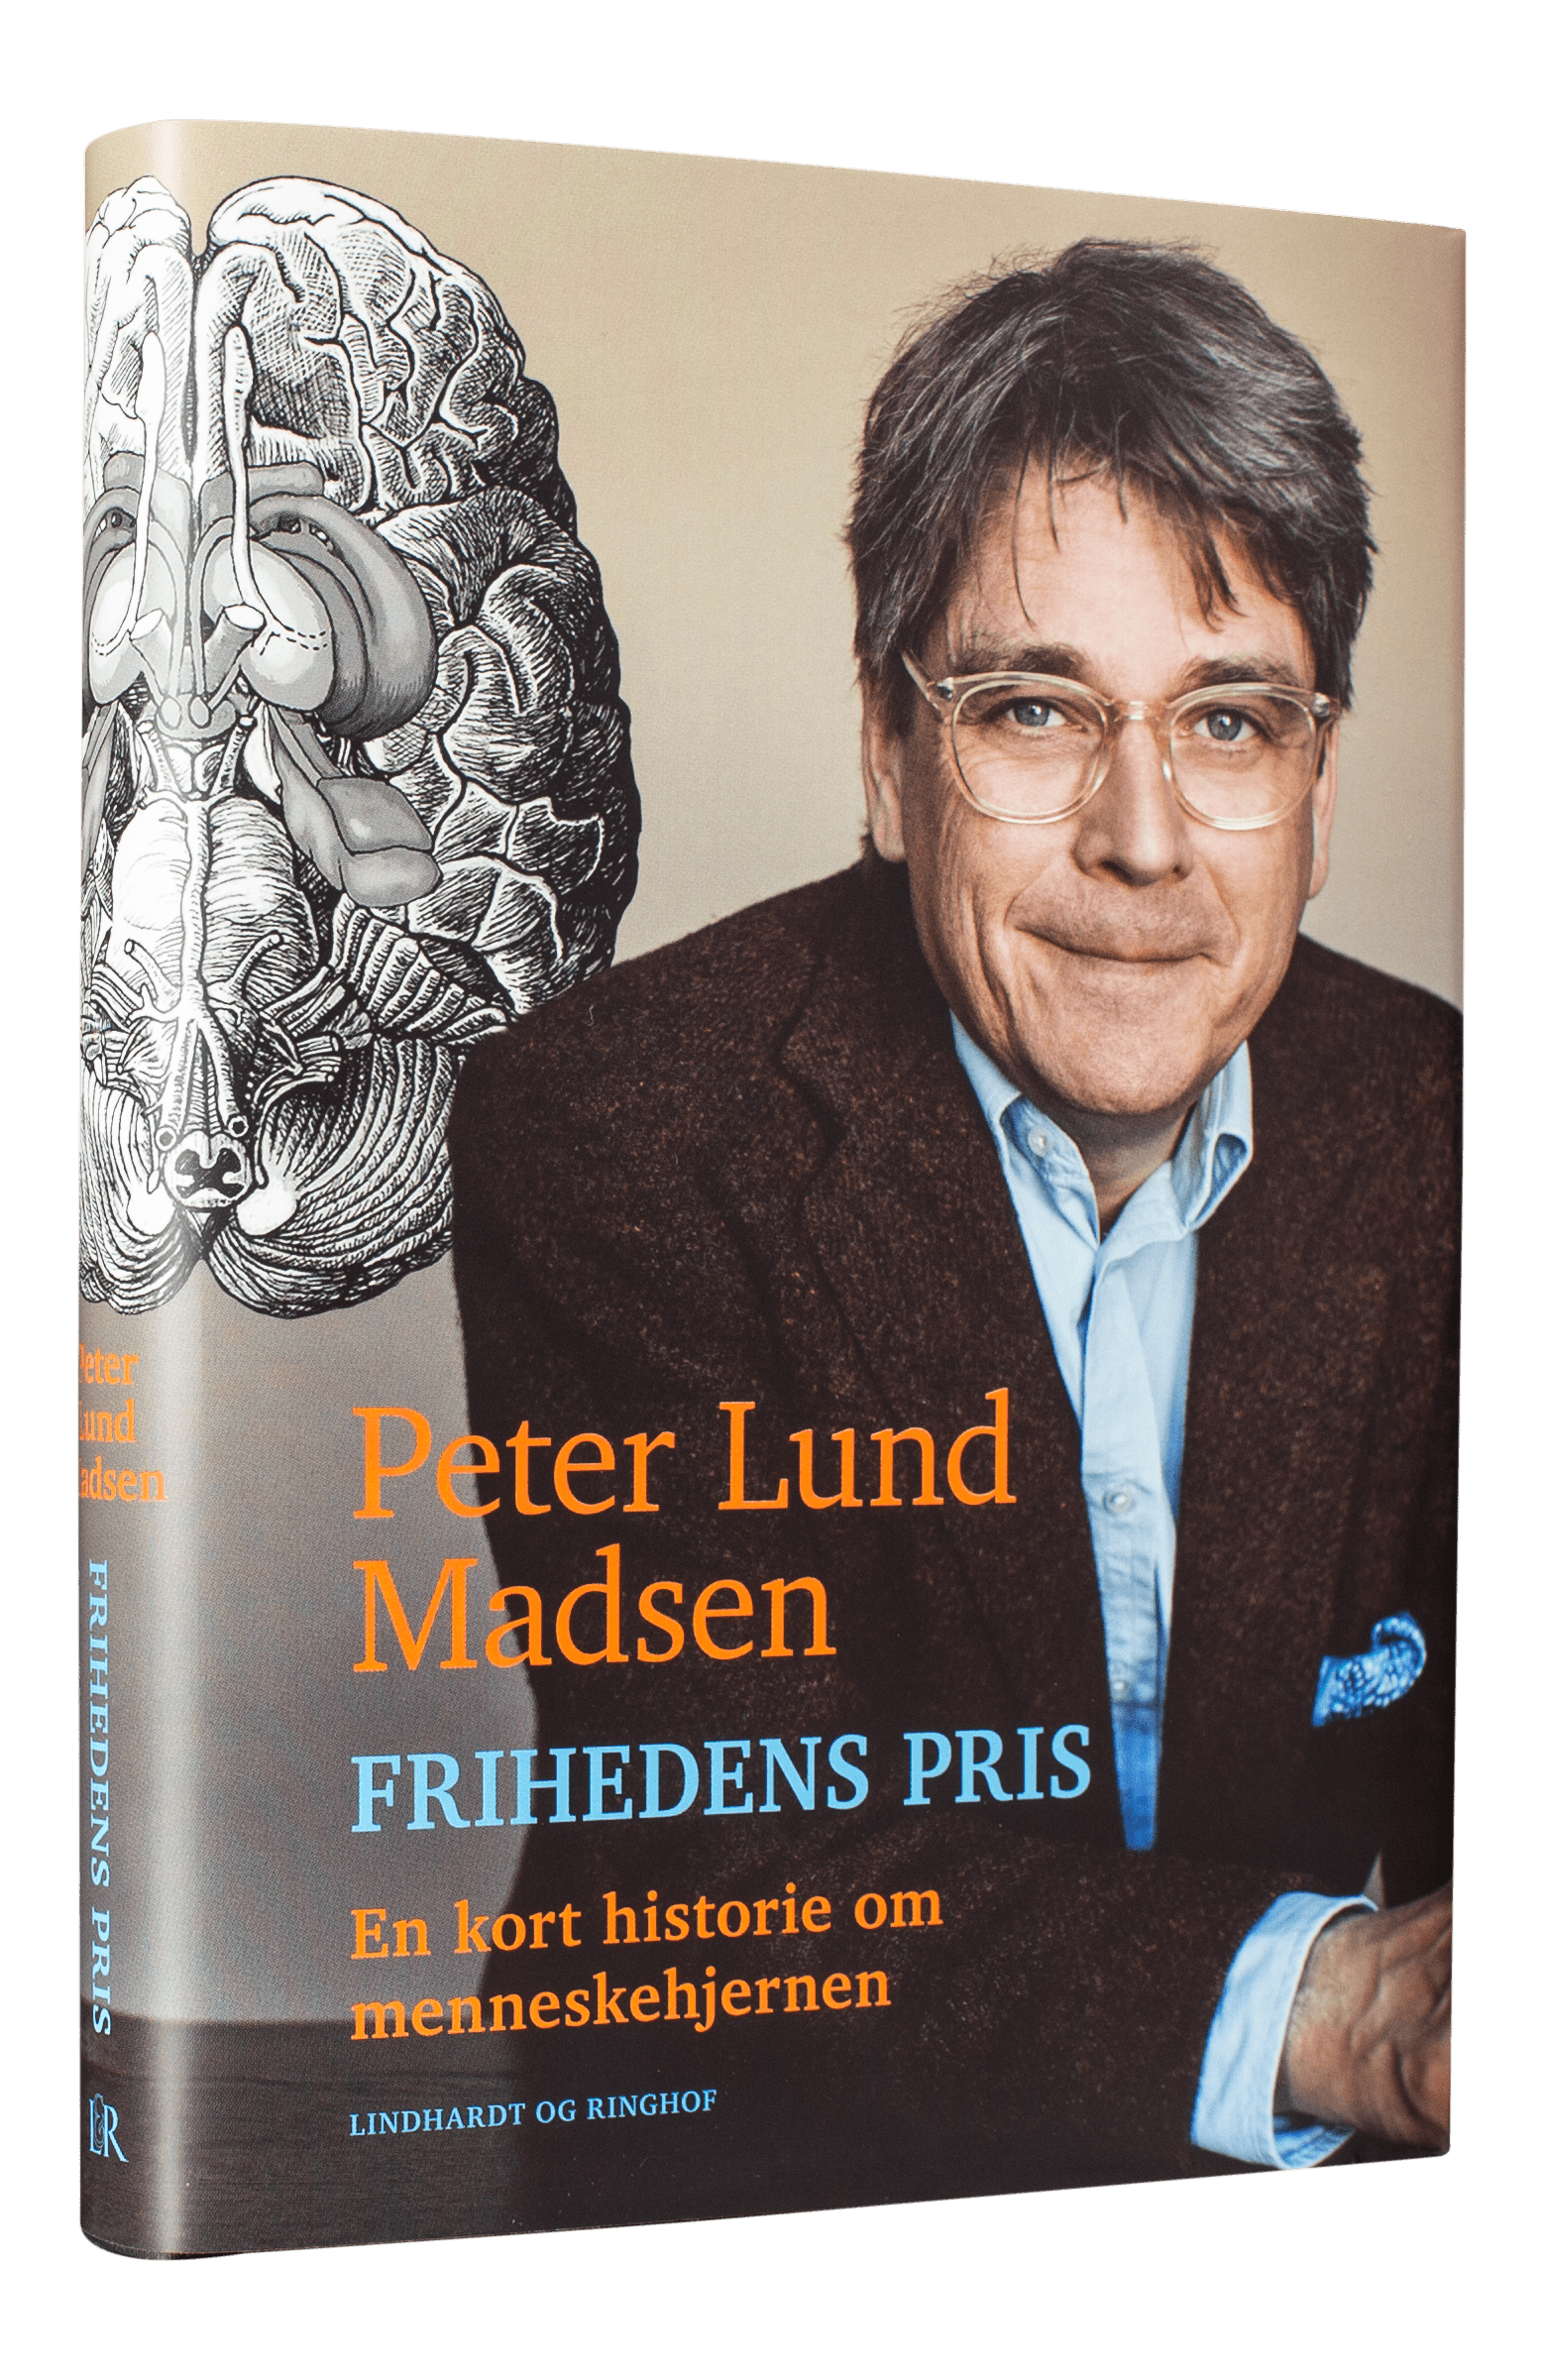 Peter Lund Madsen, Frihedens pris, En kort historie om menneskehjernen